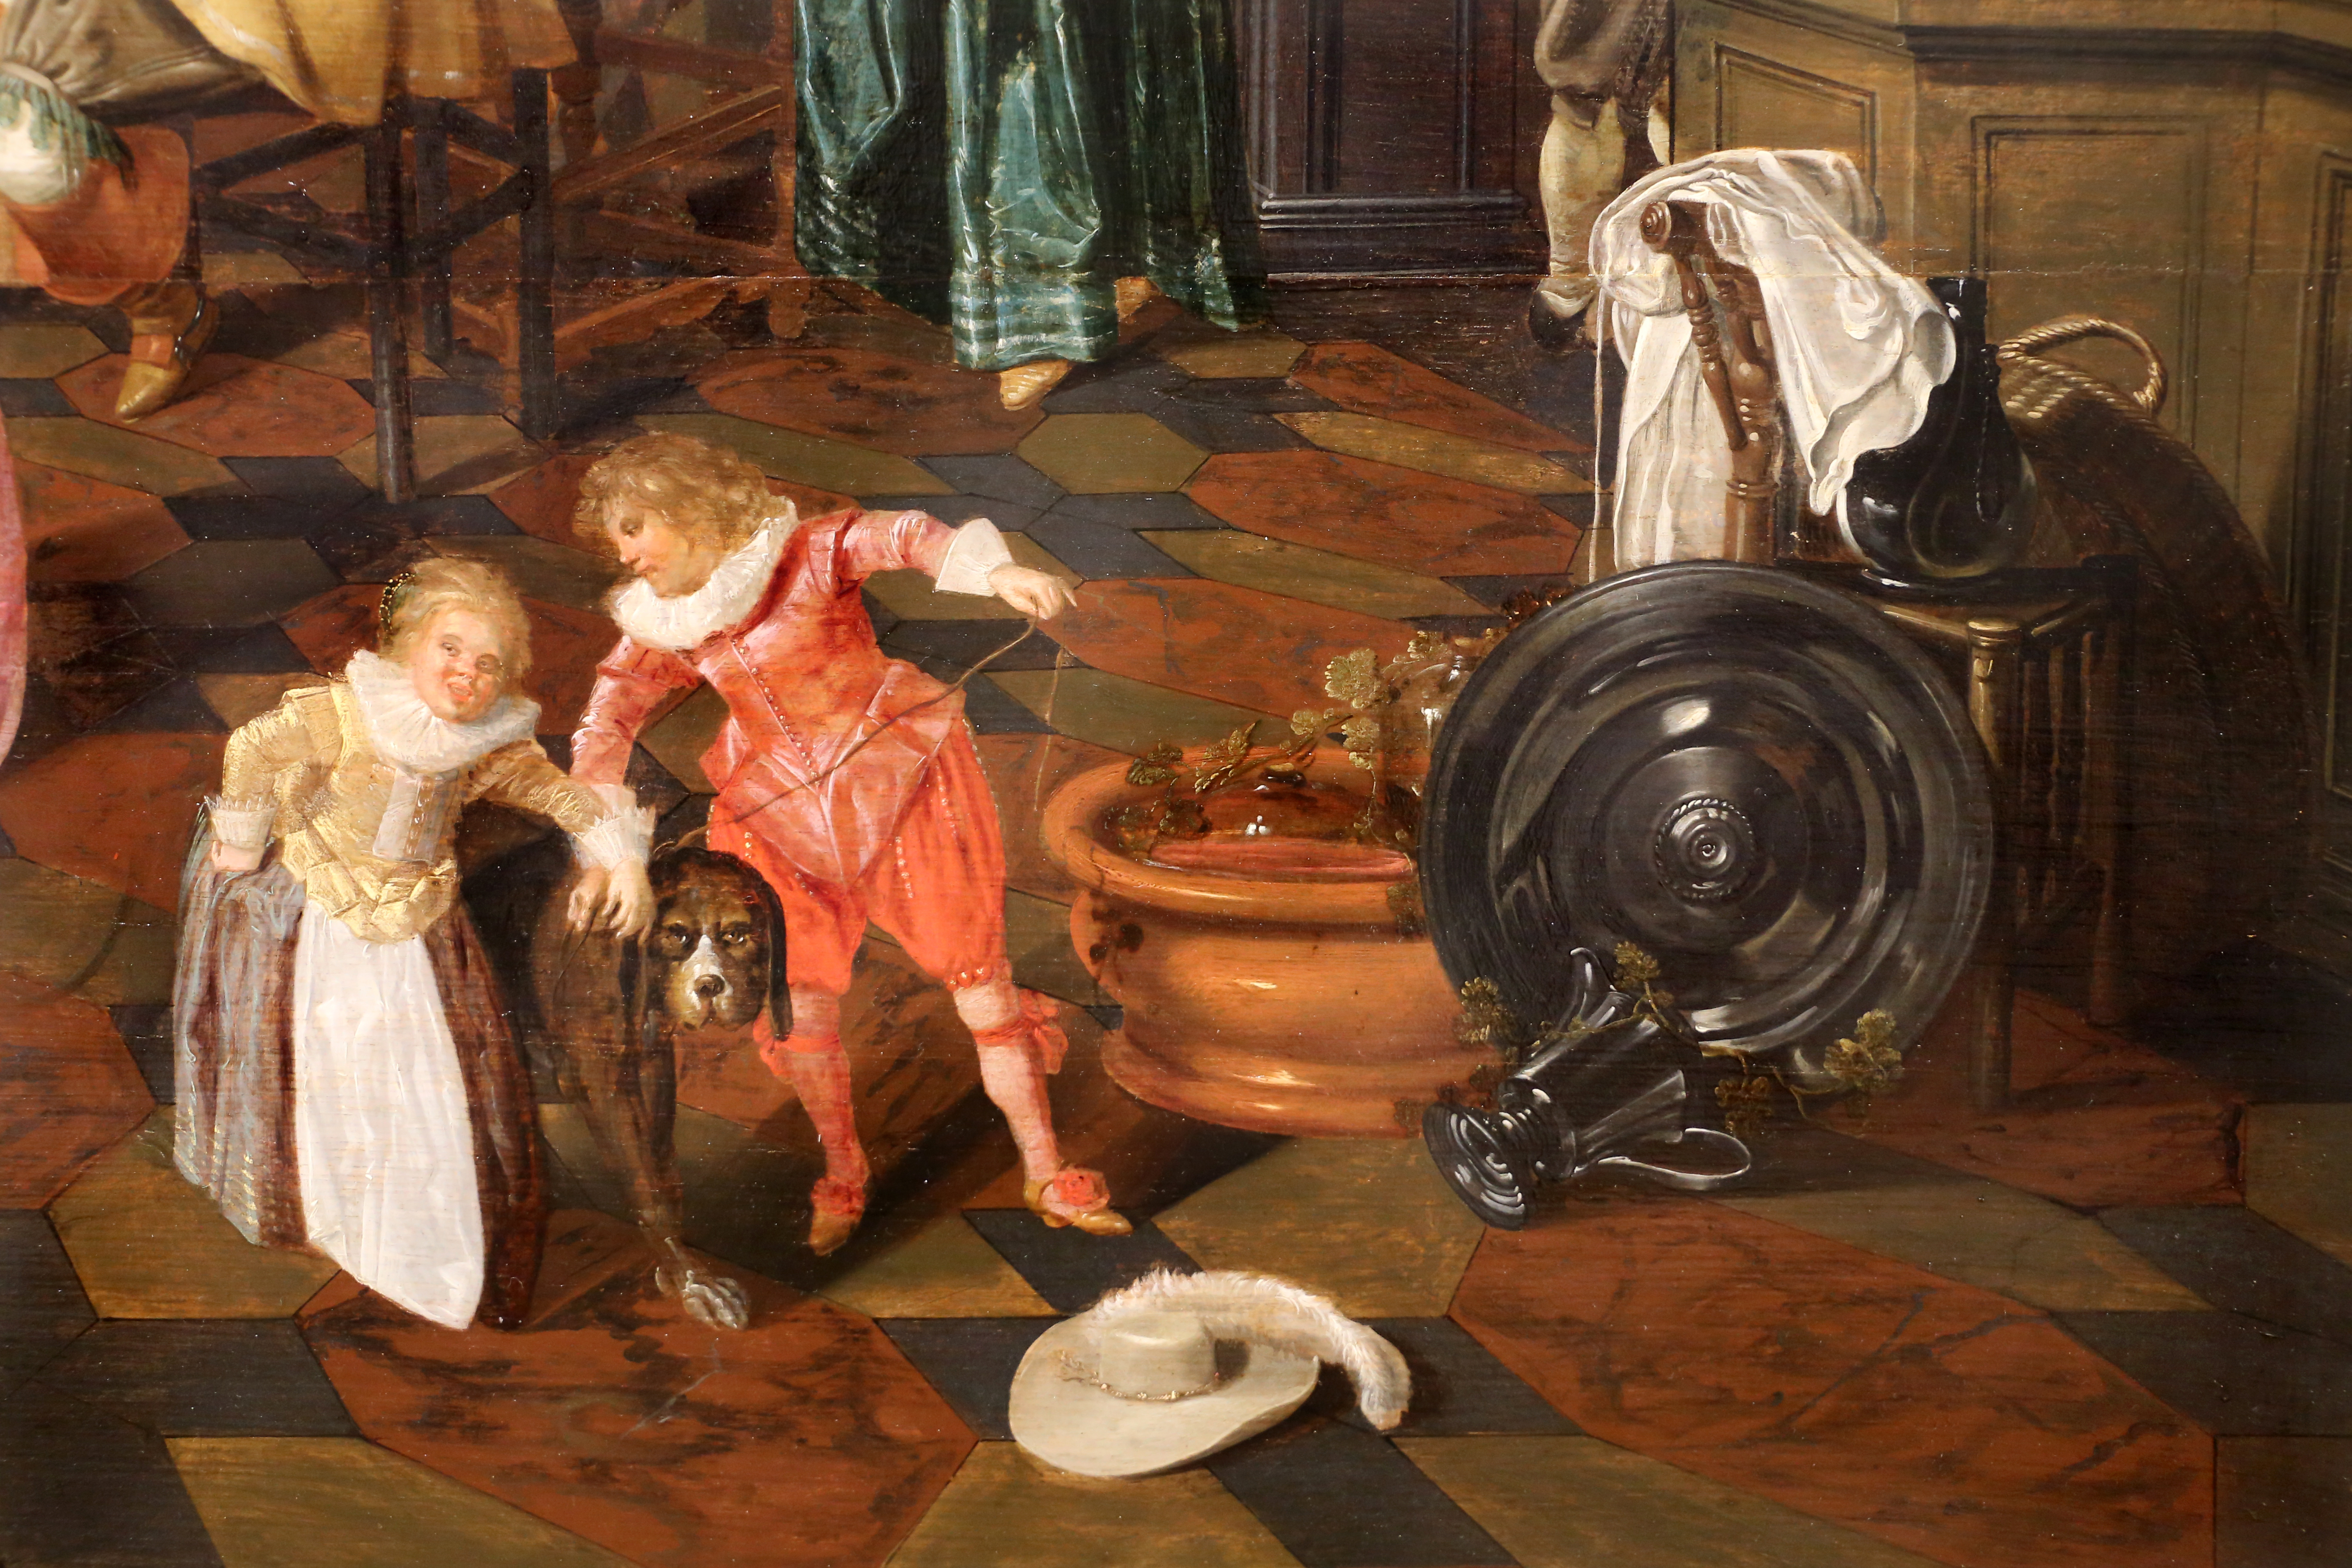 File:Dirck hals e dirck van delen, banchetto in un interno, 1628, 07 bambini  con cane e cappello.jpg - Wikimedia Commons